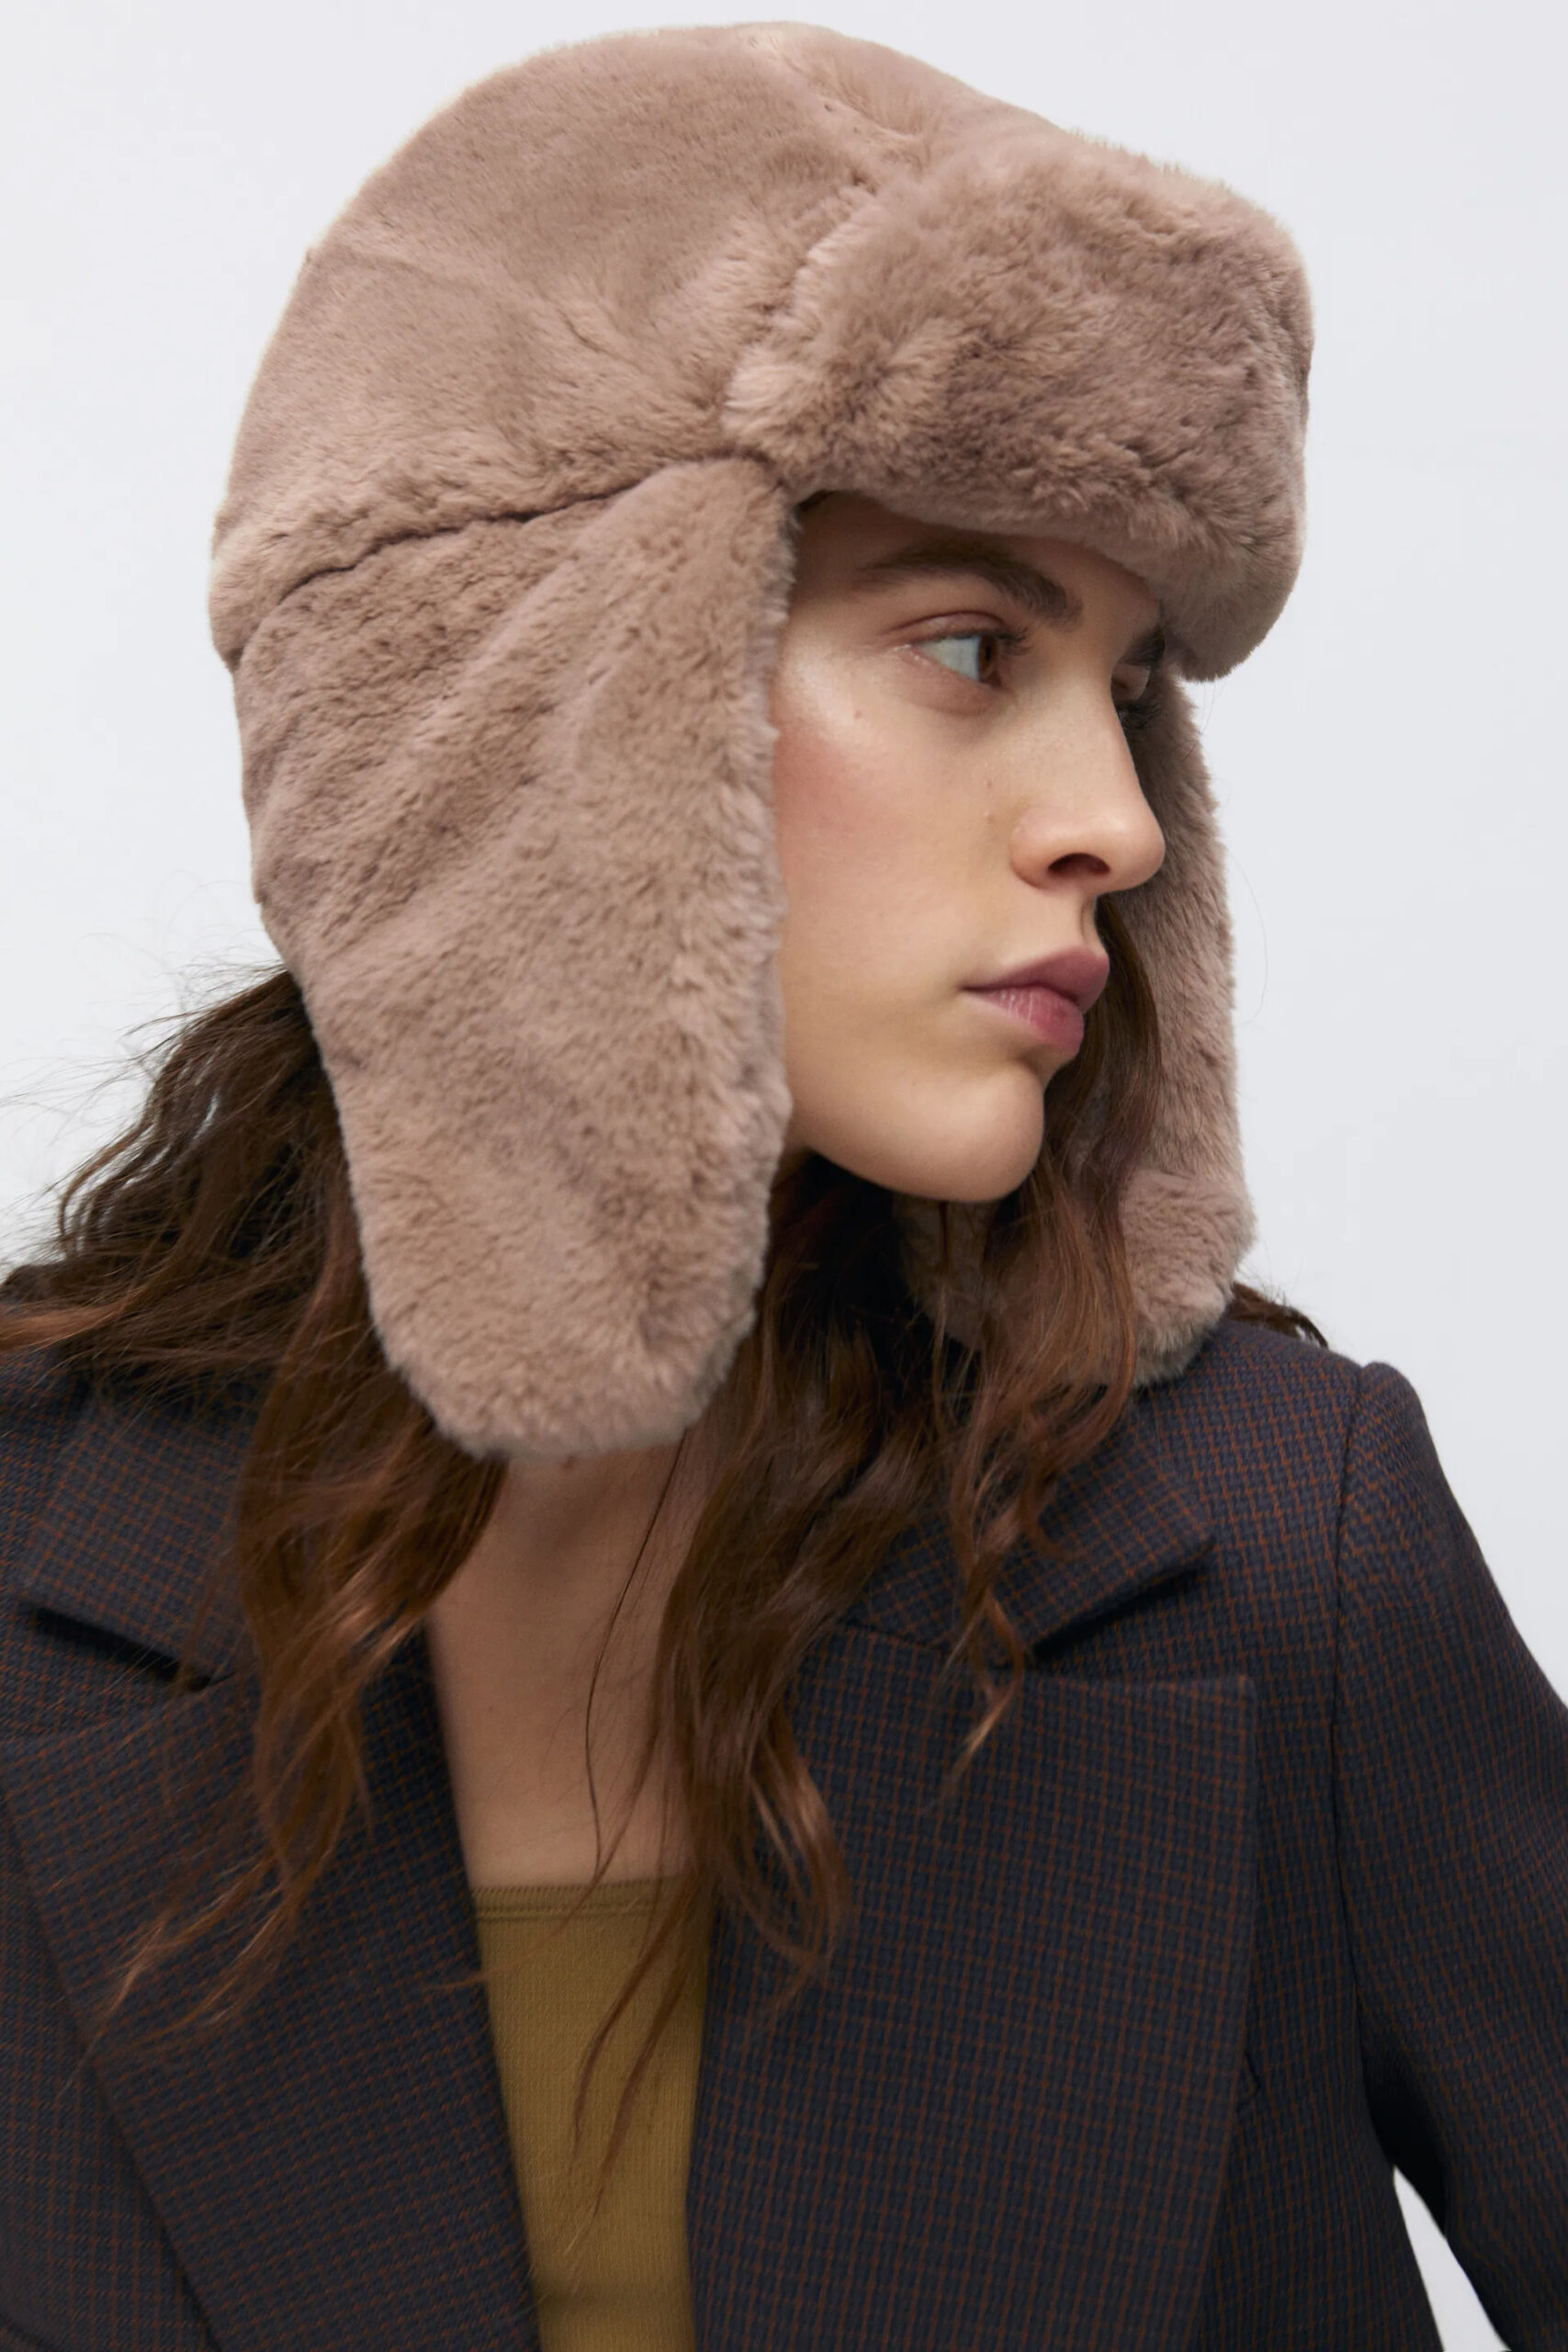 модный головной убор зима 2021 2022 теплое на голову шапка ушанка мех бежевая